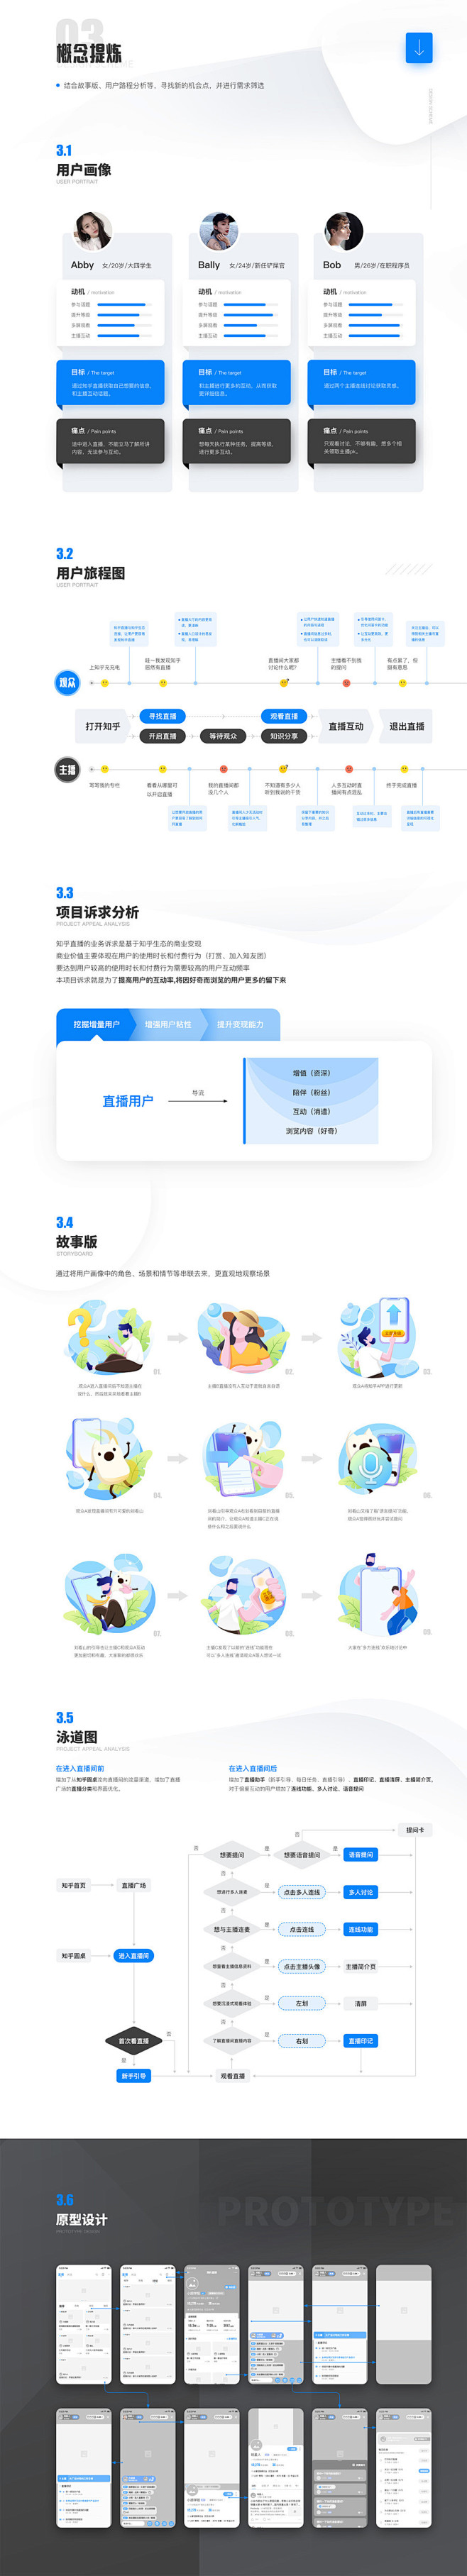 知乎直播互动设计提案-UI中国用户体验设...